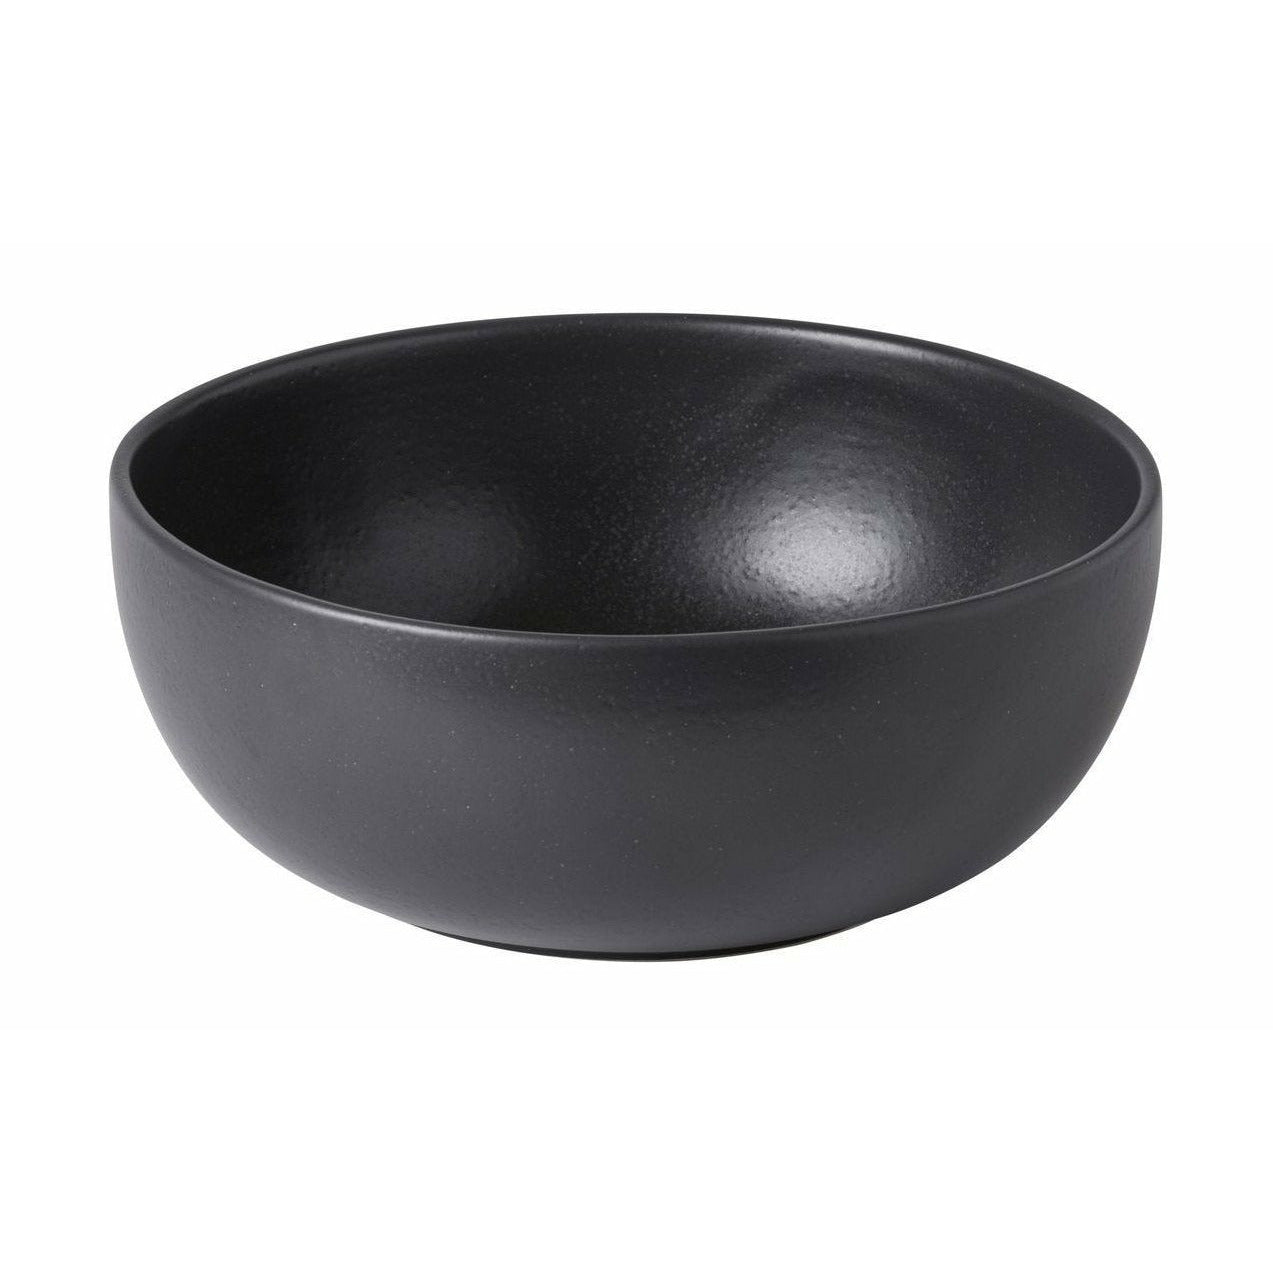 Bowl di insalata di Casafina, grigio scuro